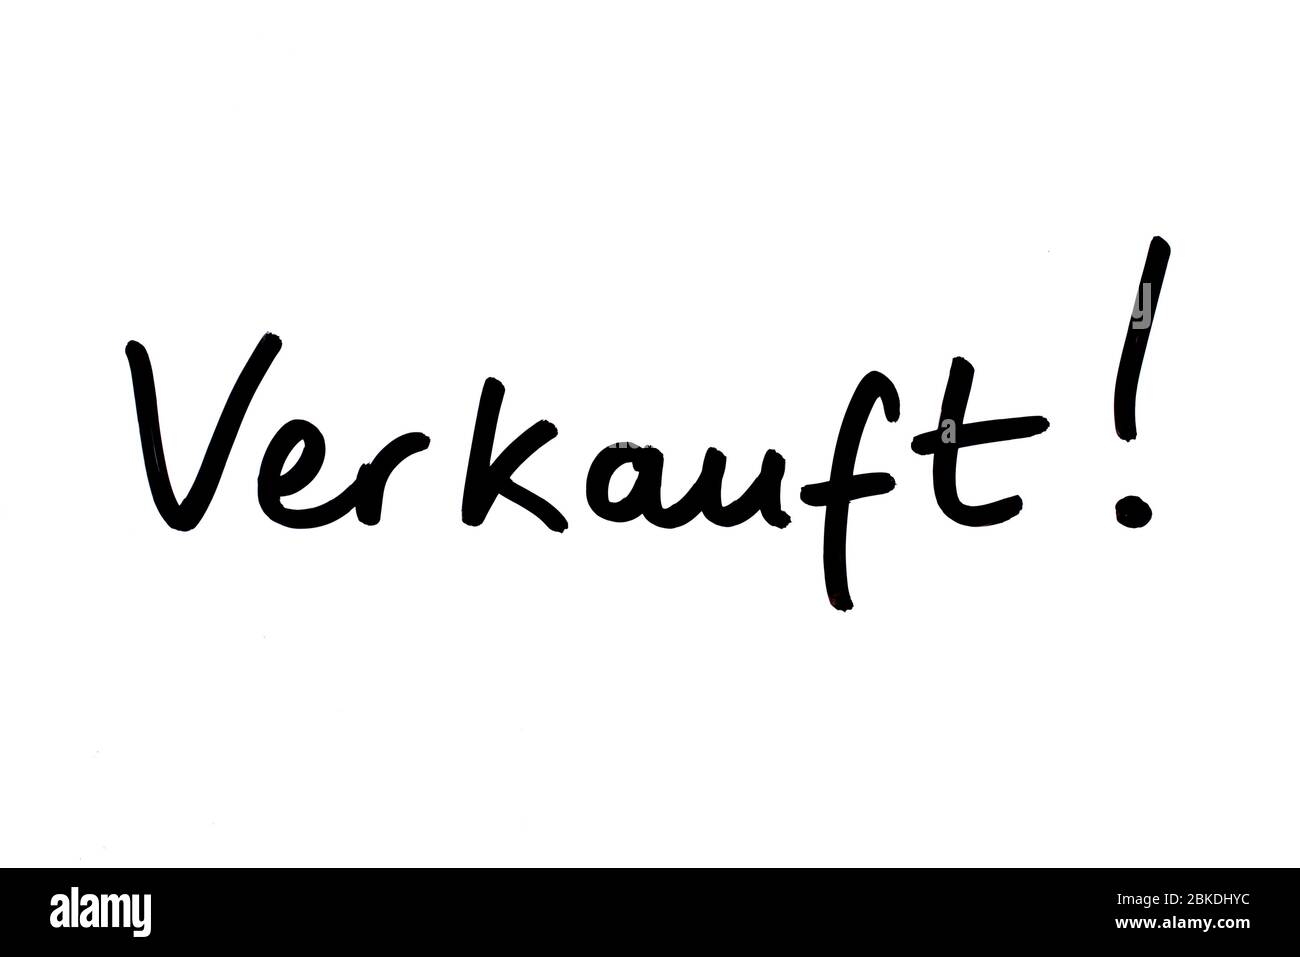 Das Wort Verkauft! - Bedeutung verkauft! In deutscher Sprache, handschriftlich auf weißem Hintergrund. Stockfoto